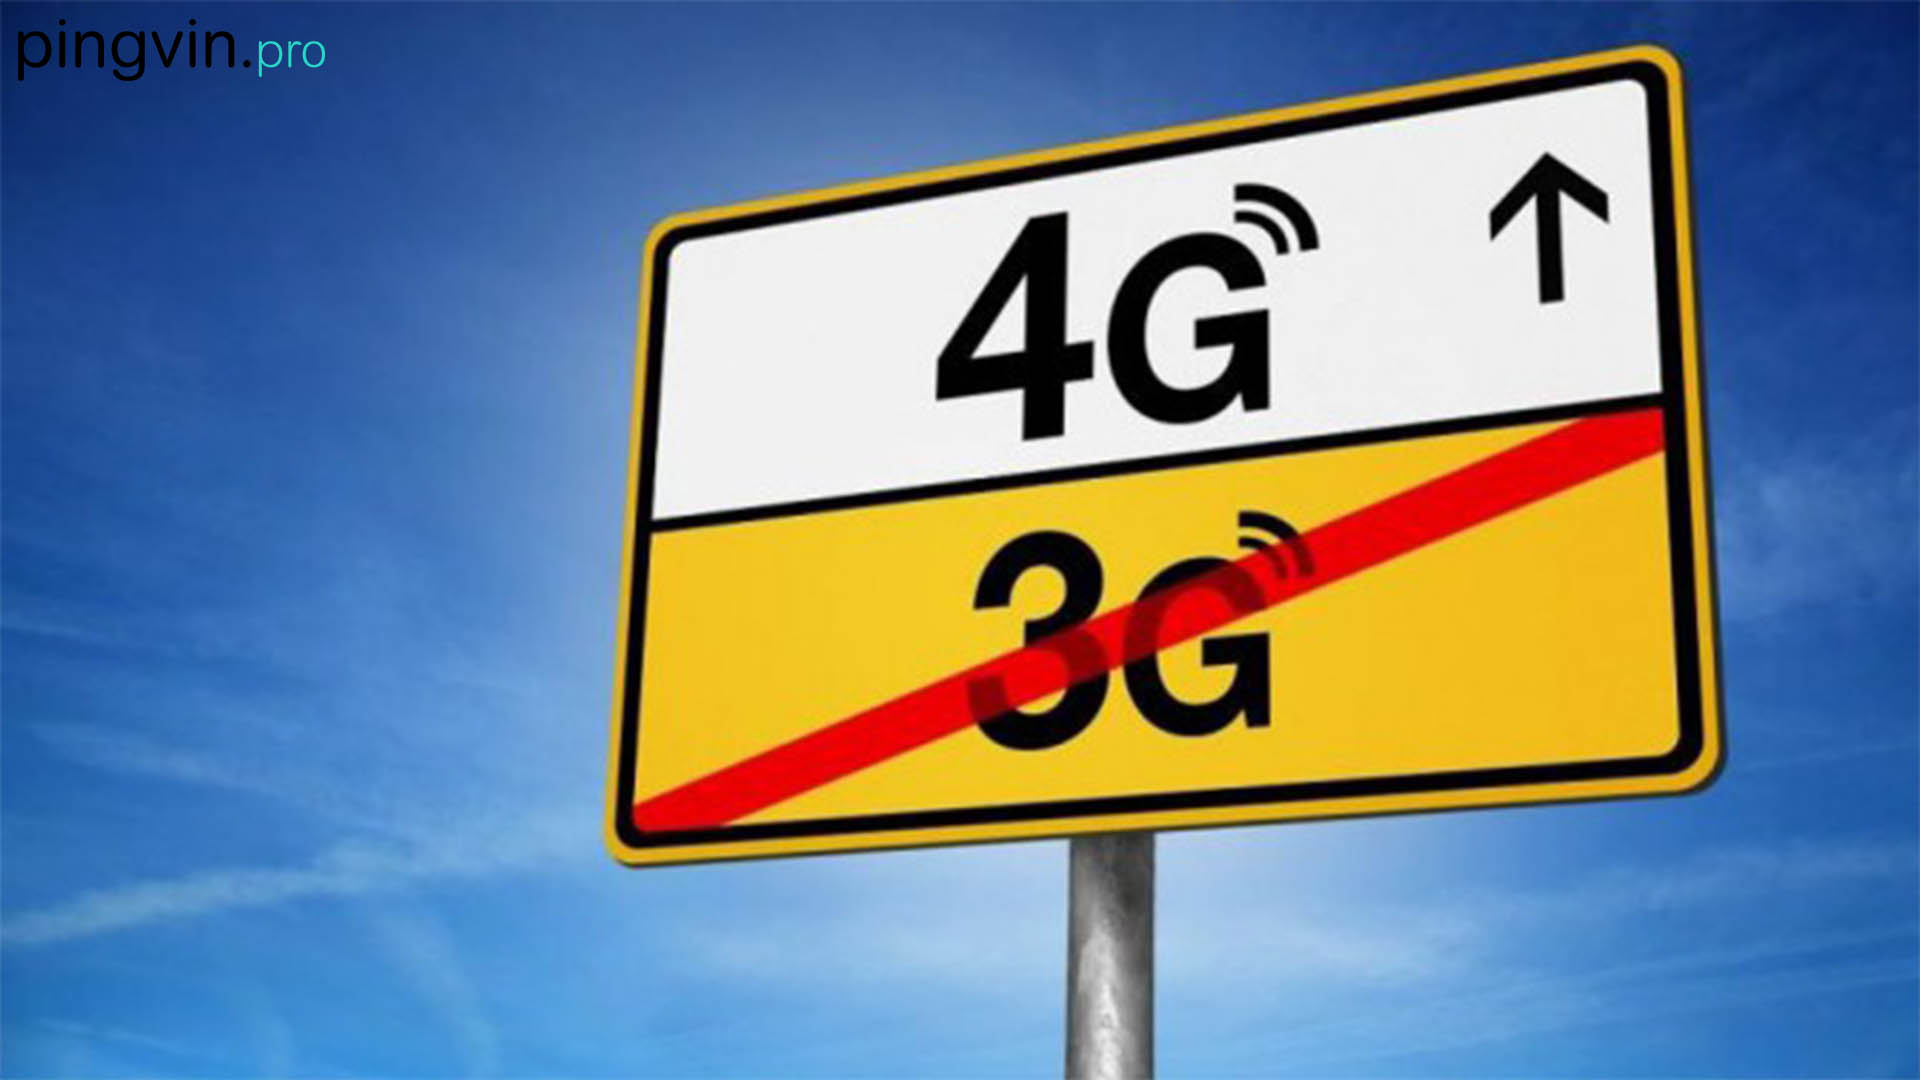 Vodafone, Київстар та lifecell отримали дозвіл на розгортання 4G LTE в діапазонах 800-900 МГц